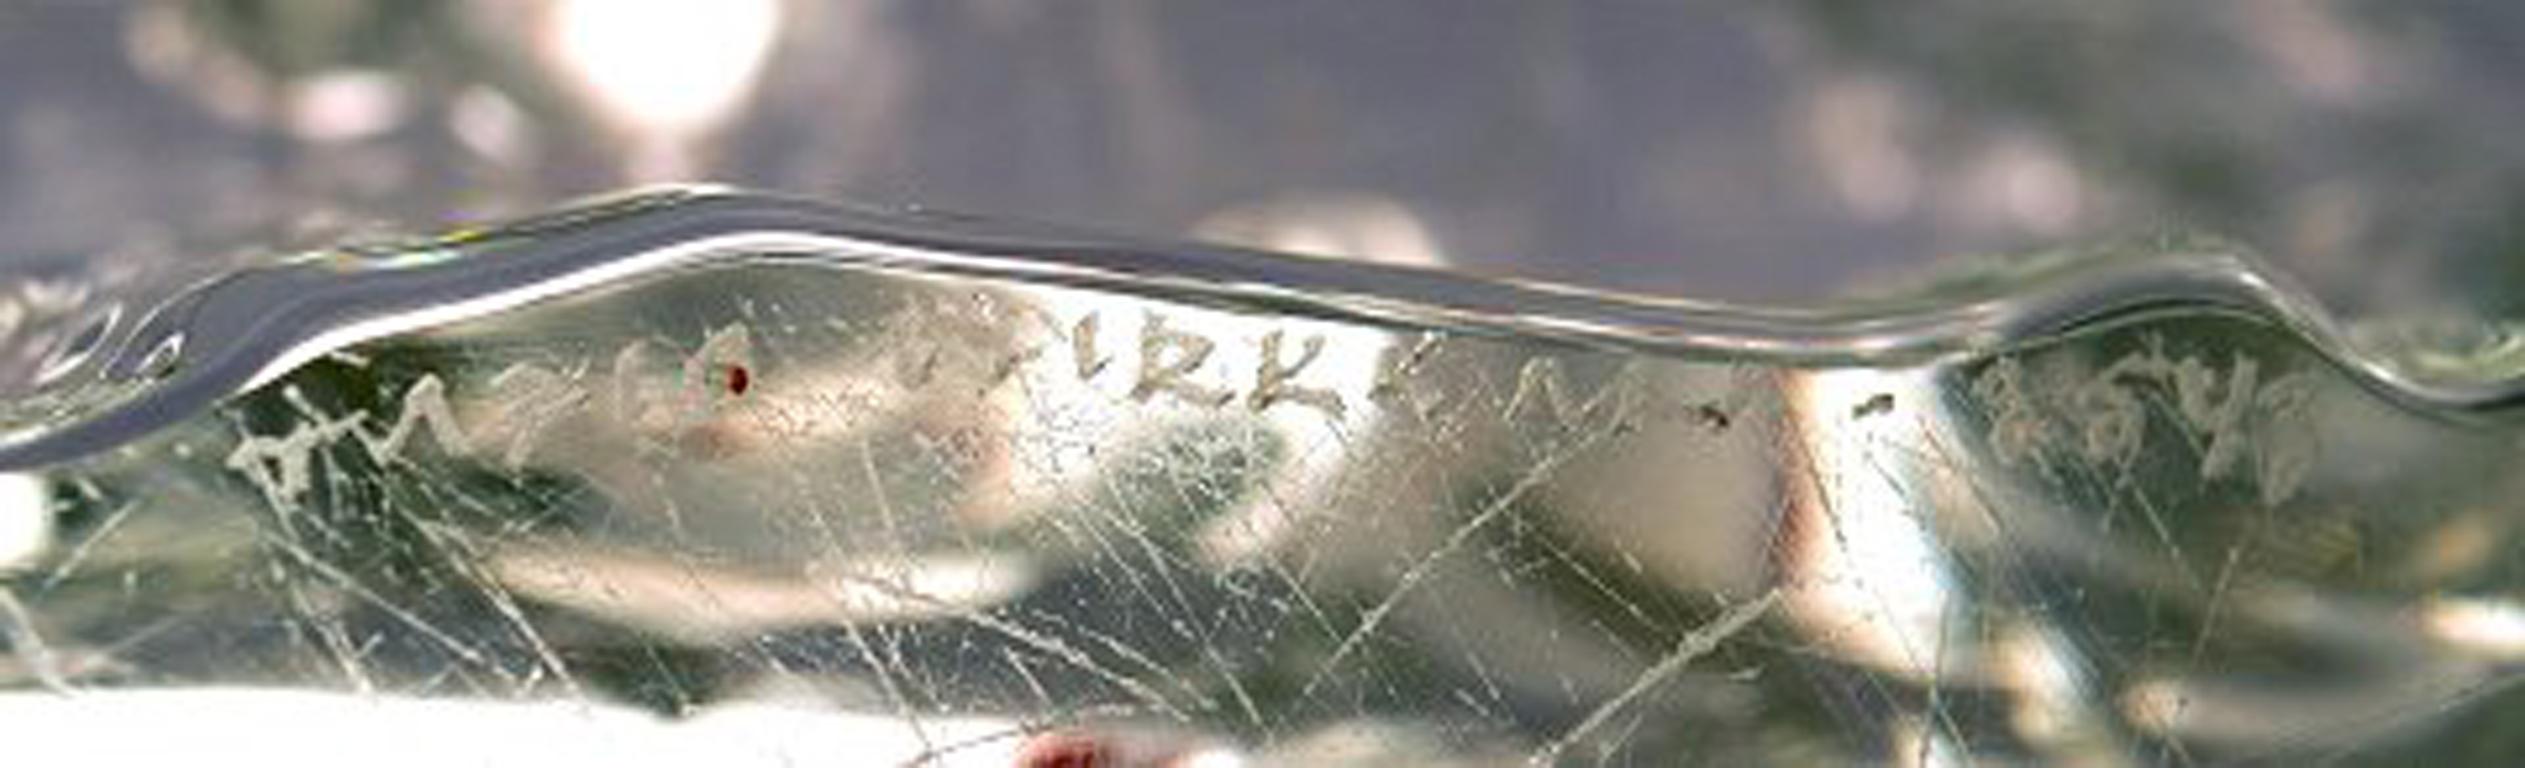 Iittala, Tapio Wirkkala Huge Art Glass Bowl, Model Number 3543 3